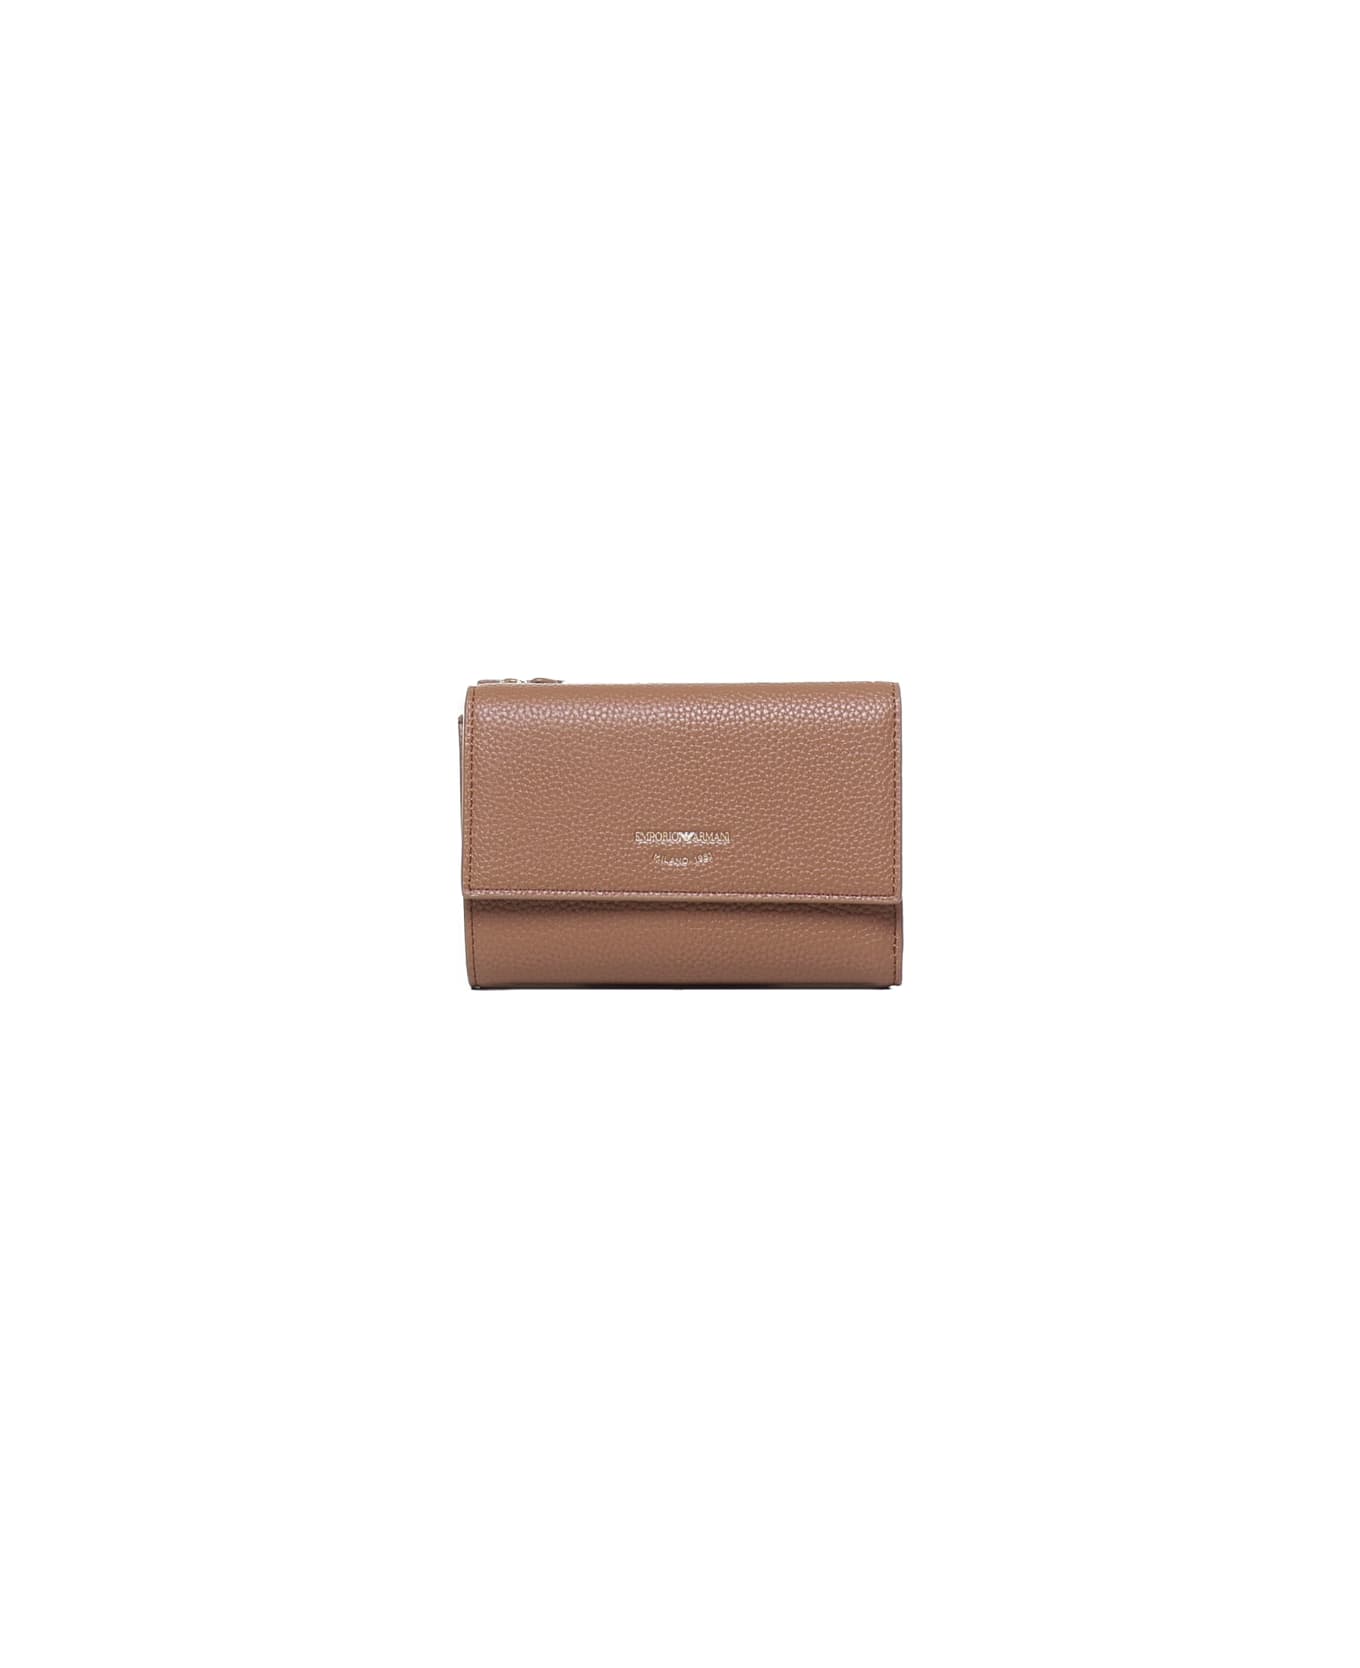 Giorgio Armani Wallet With Card Compartment And Magnetic Closure Giorgio Armani - BLACK